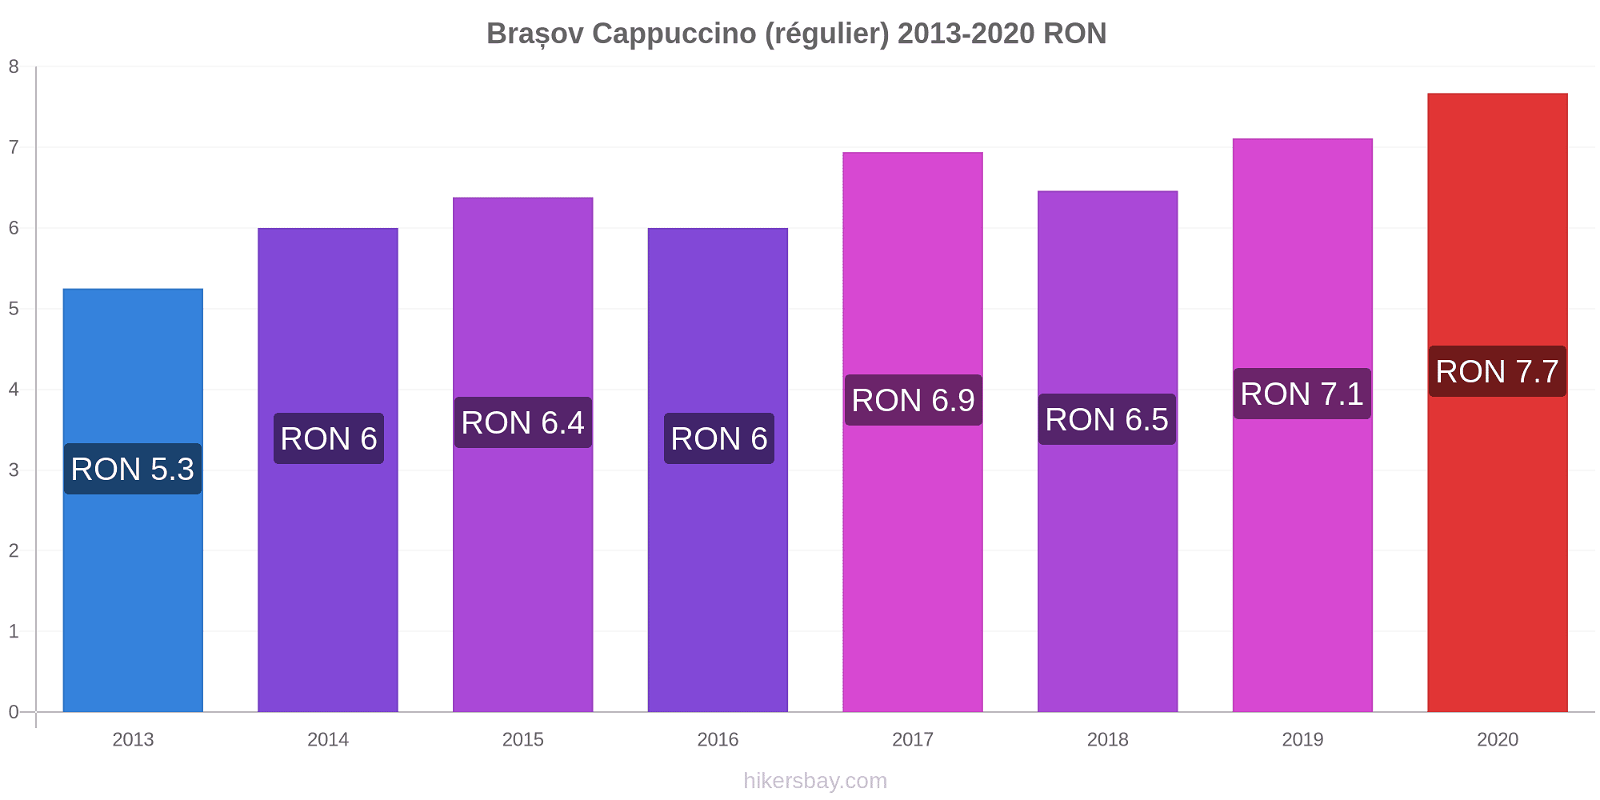 Brașov changements de prix Cappuccino (régulier) hikersbay.com